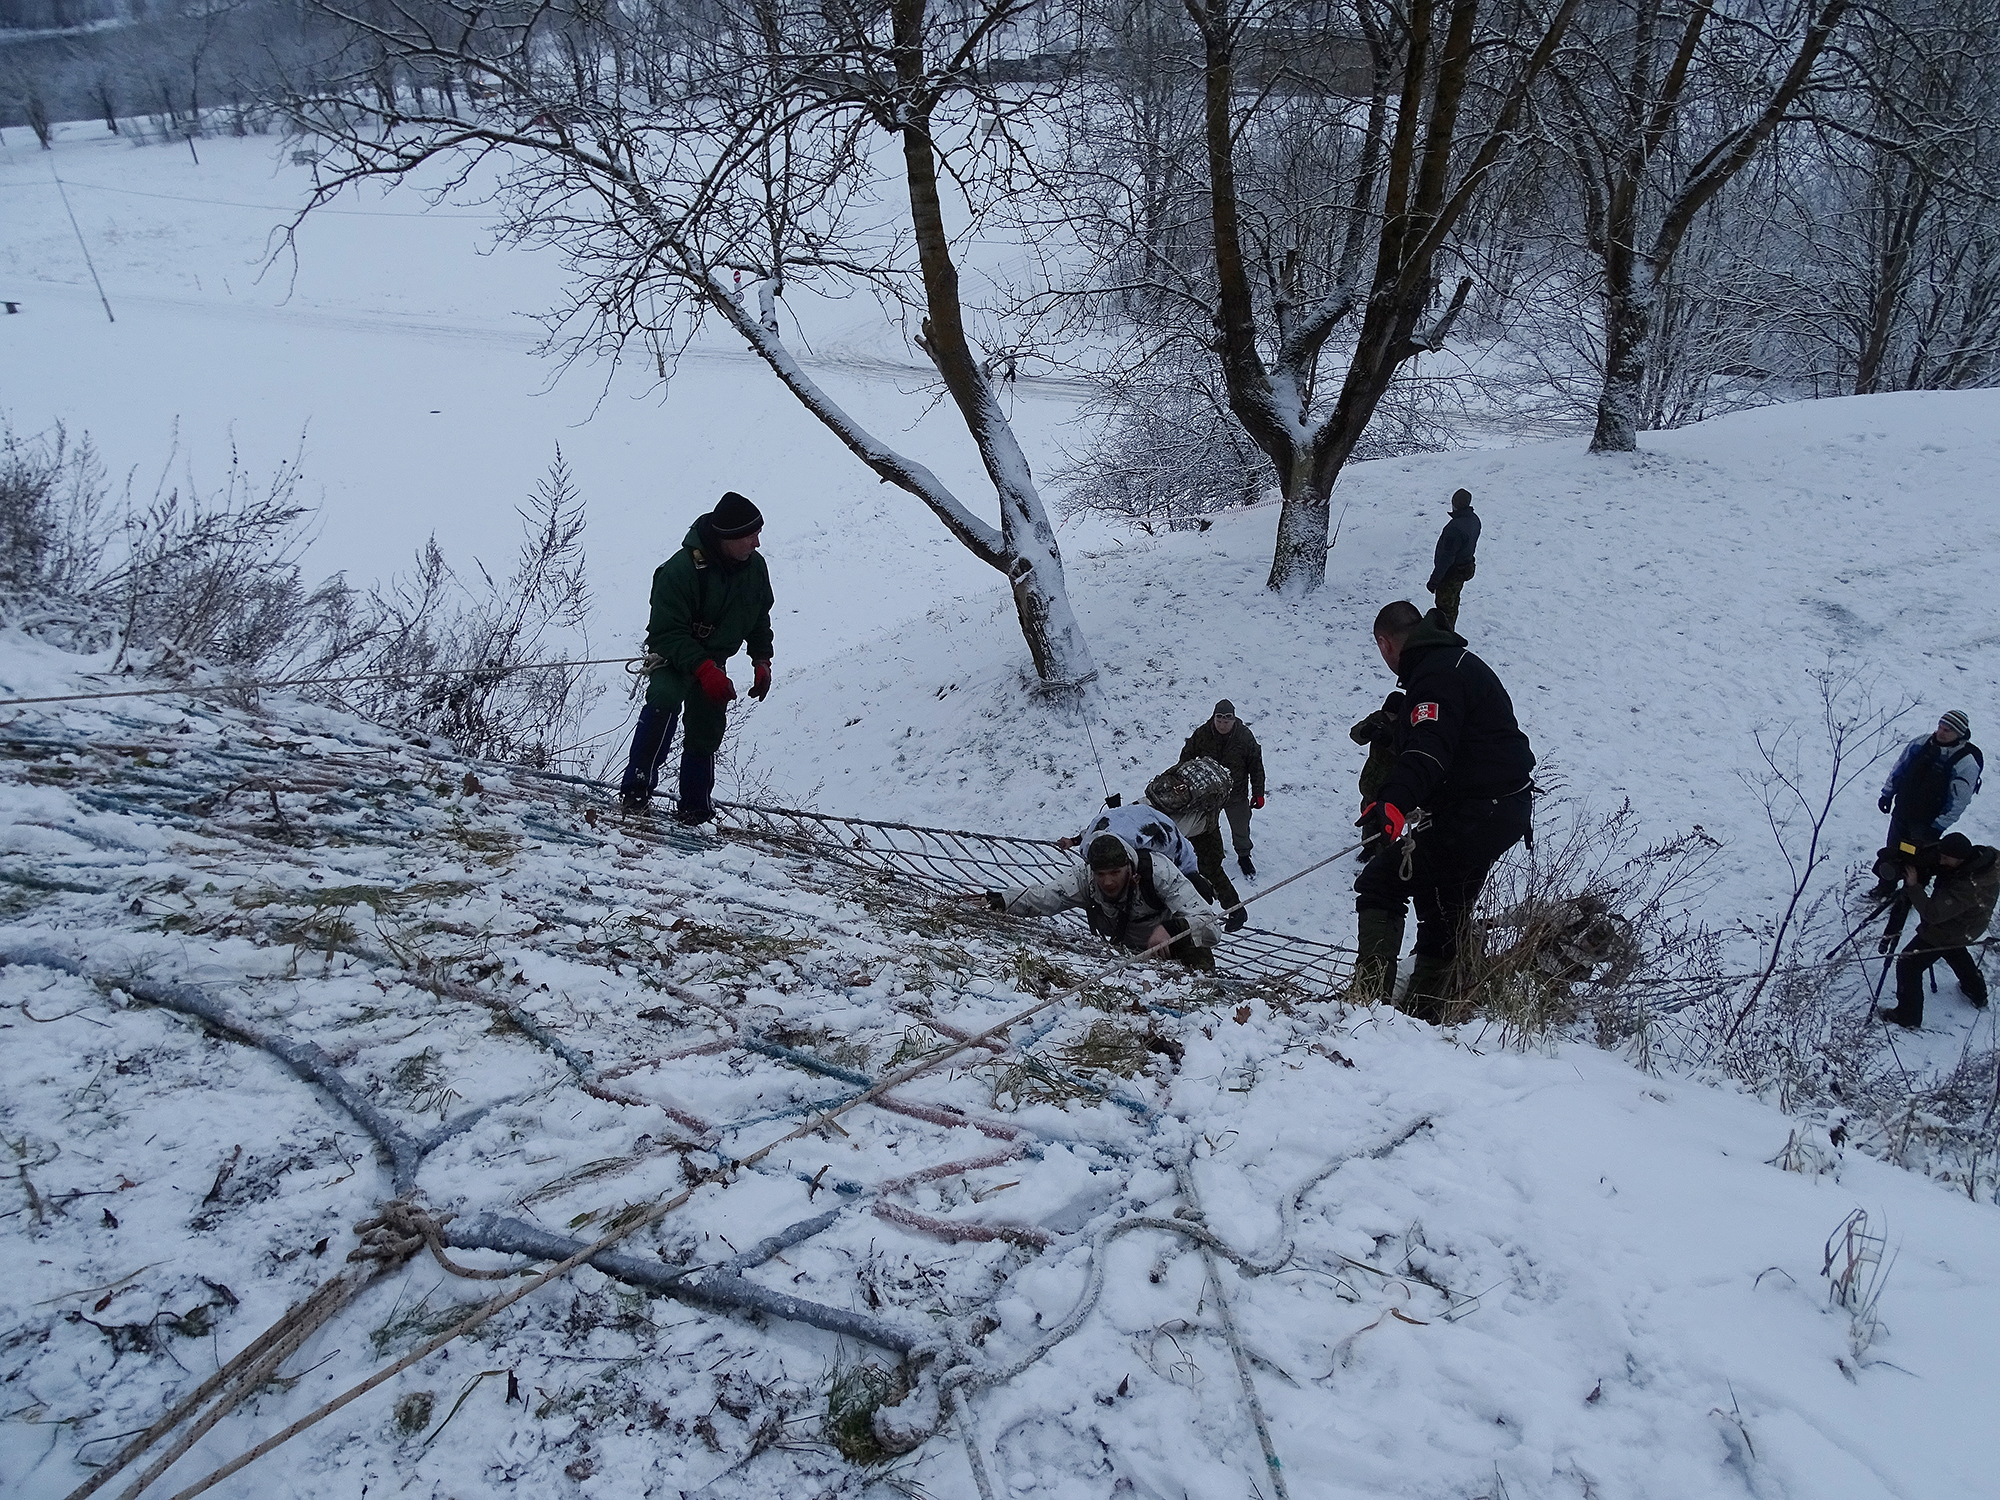 Kälte, Schnee und ein Hügel – estnisches Überlebenstraining.